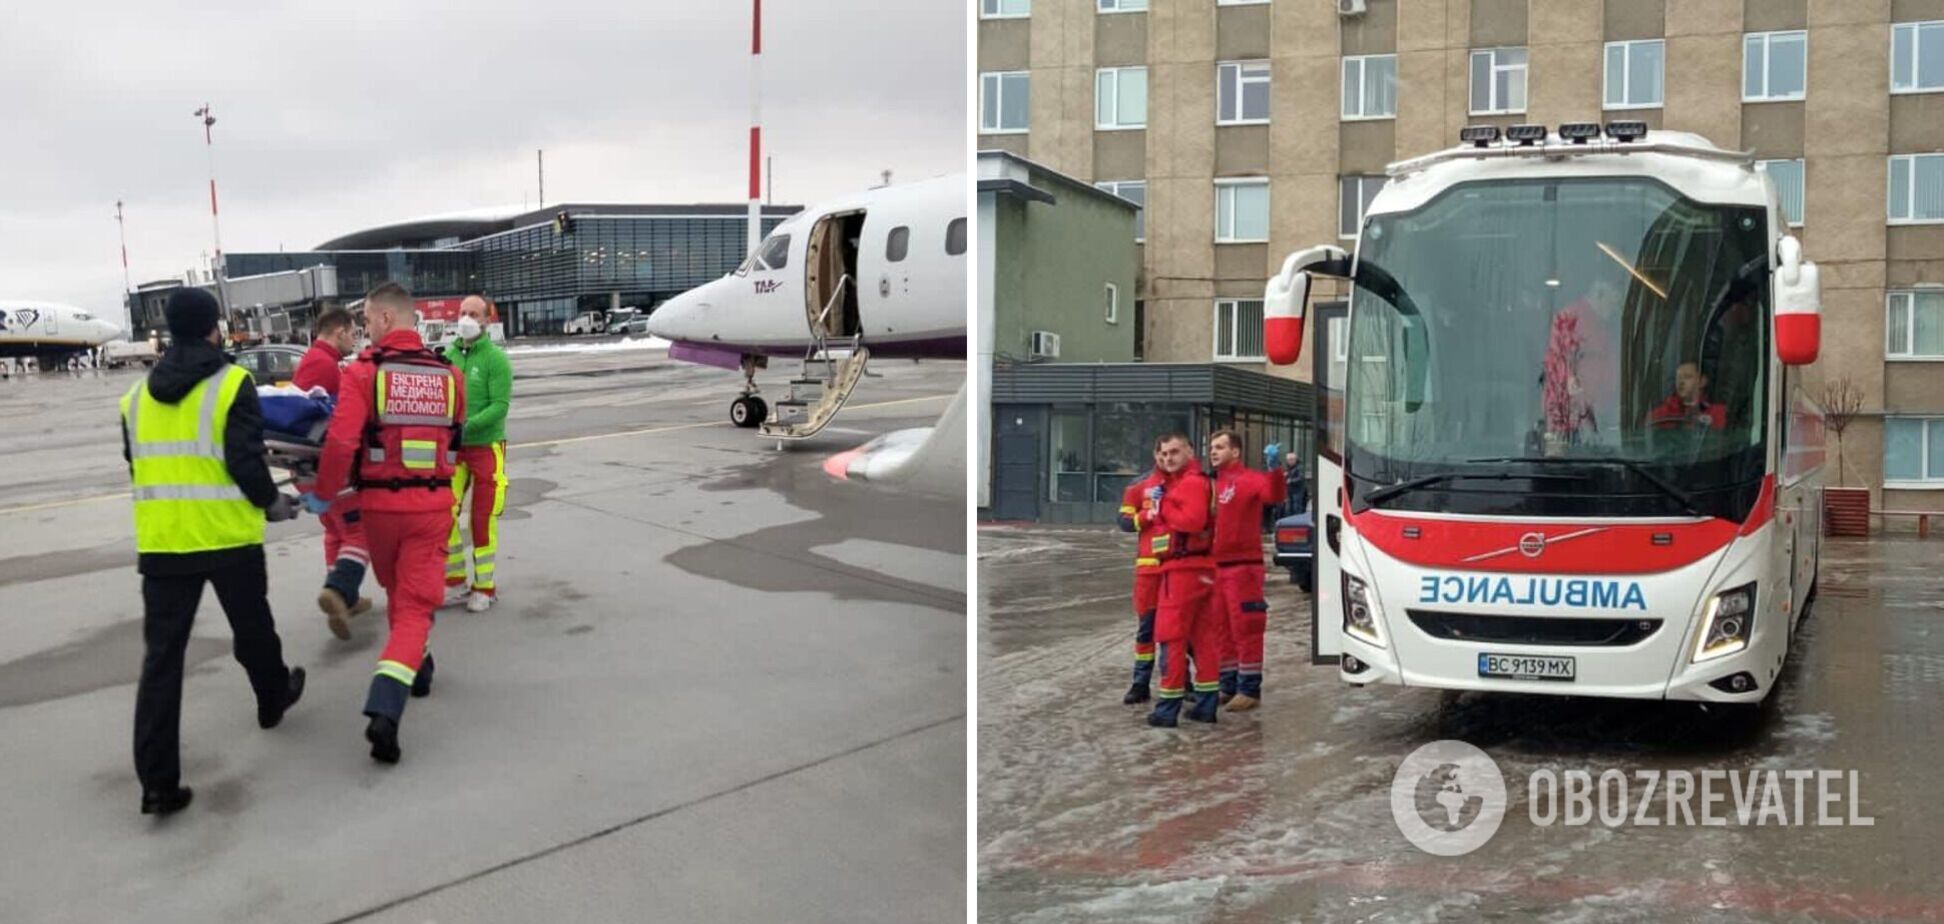 Шесть пострадавших в авиакатастрофе в Броварах с ожогами были доставлены на лечение в Австрию: появились подробности. Фото